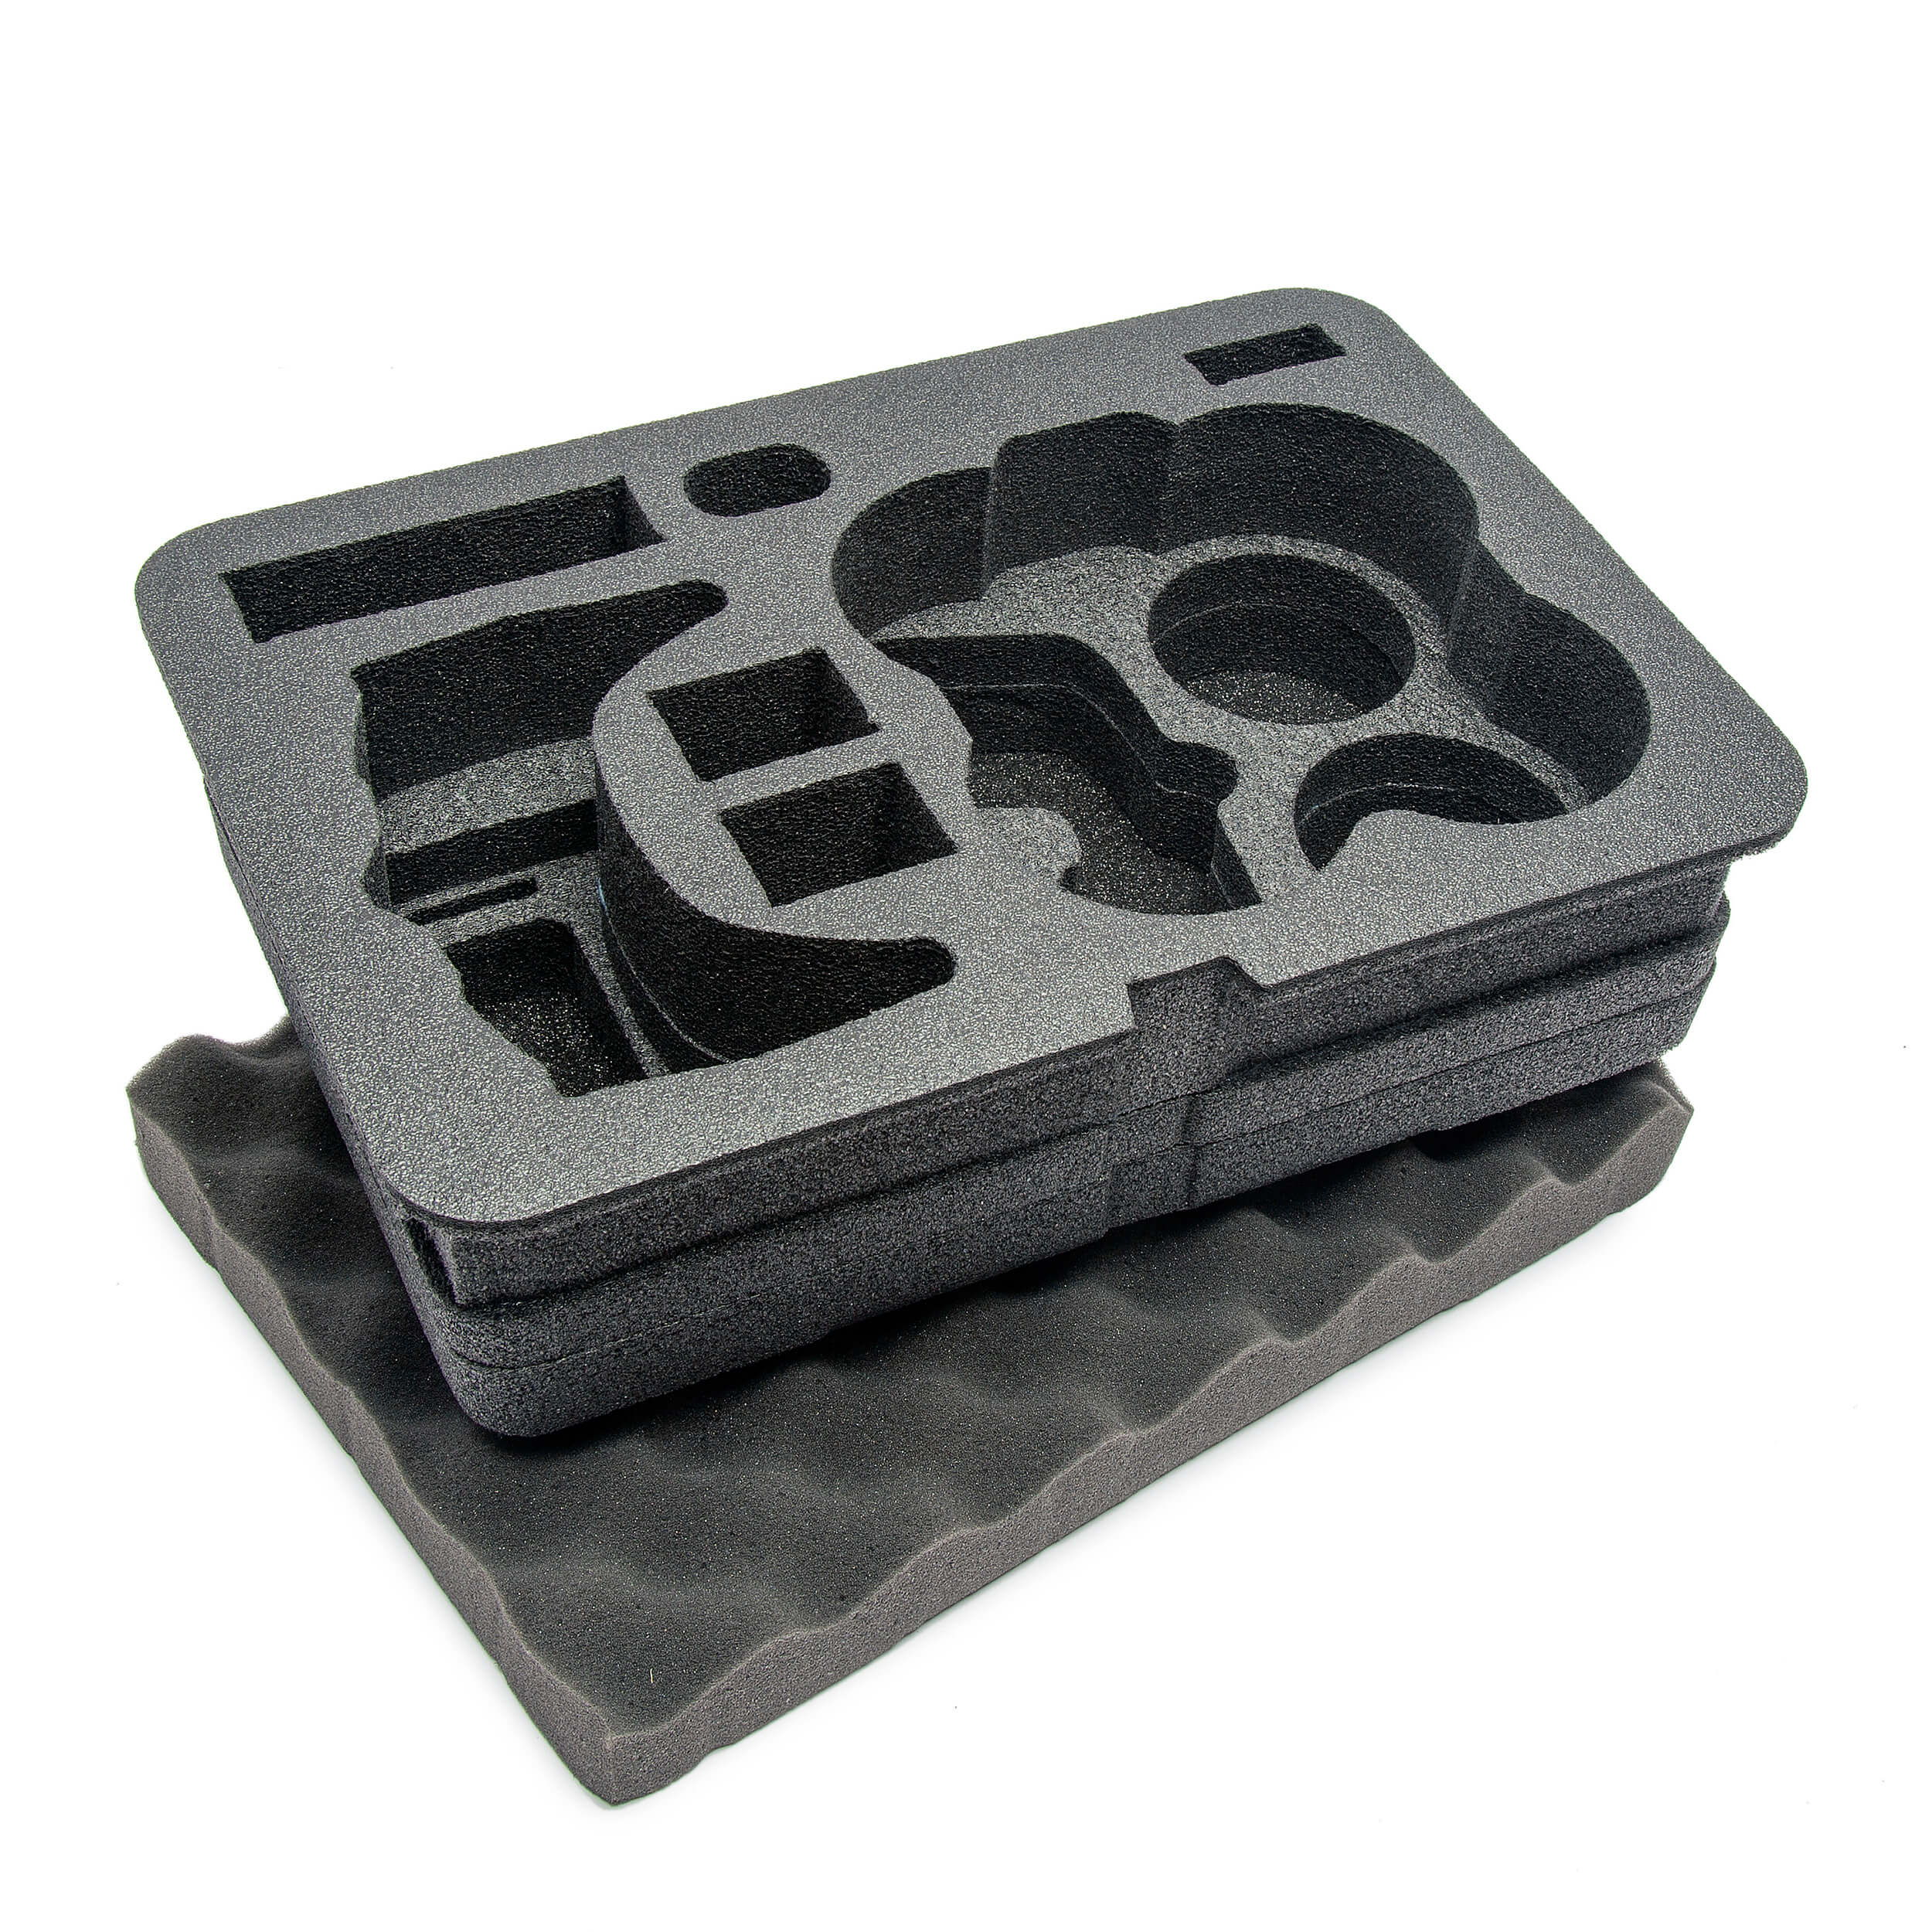 流行のアイテム Nanuk DJI Drone Waterproof Hard Case with Custom Foam Insert for  カメラアクセサリー